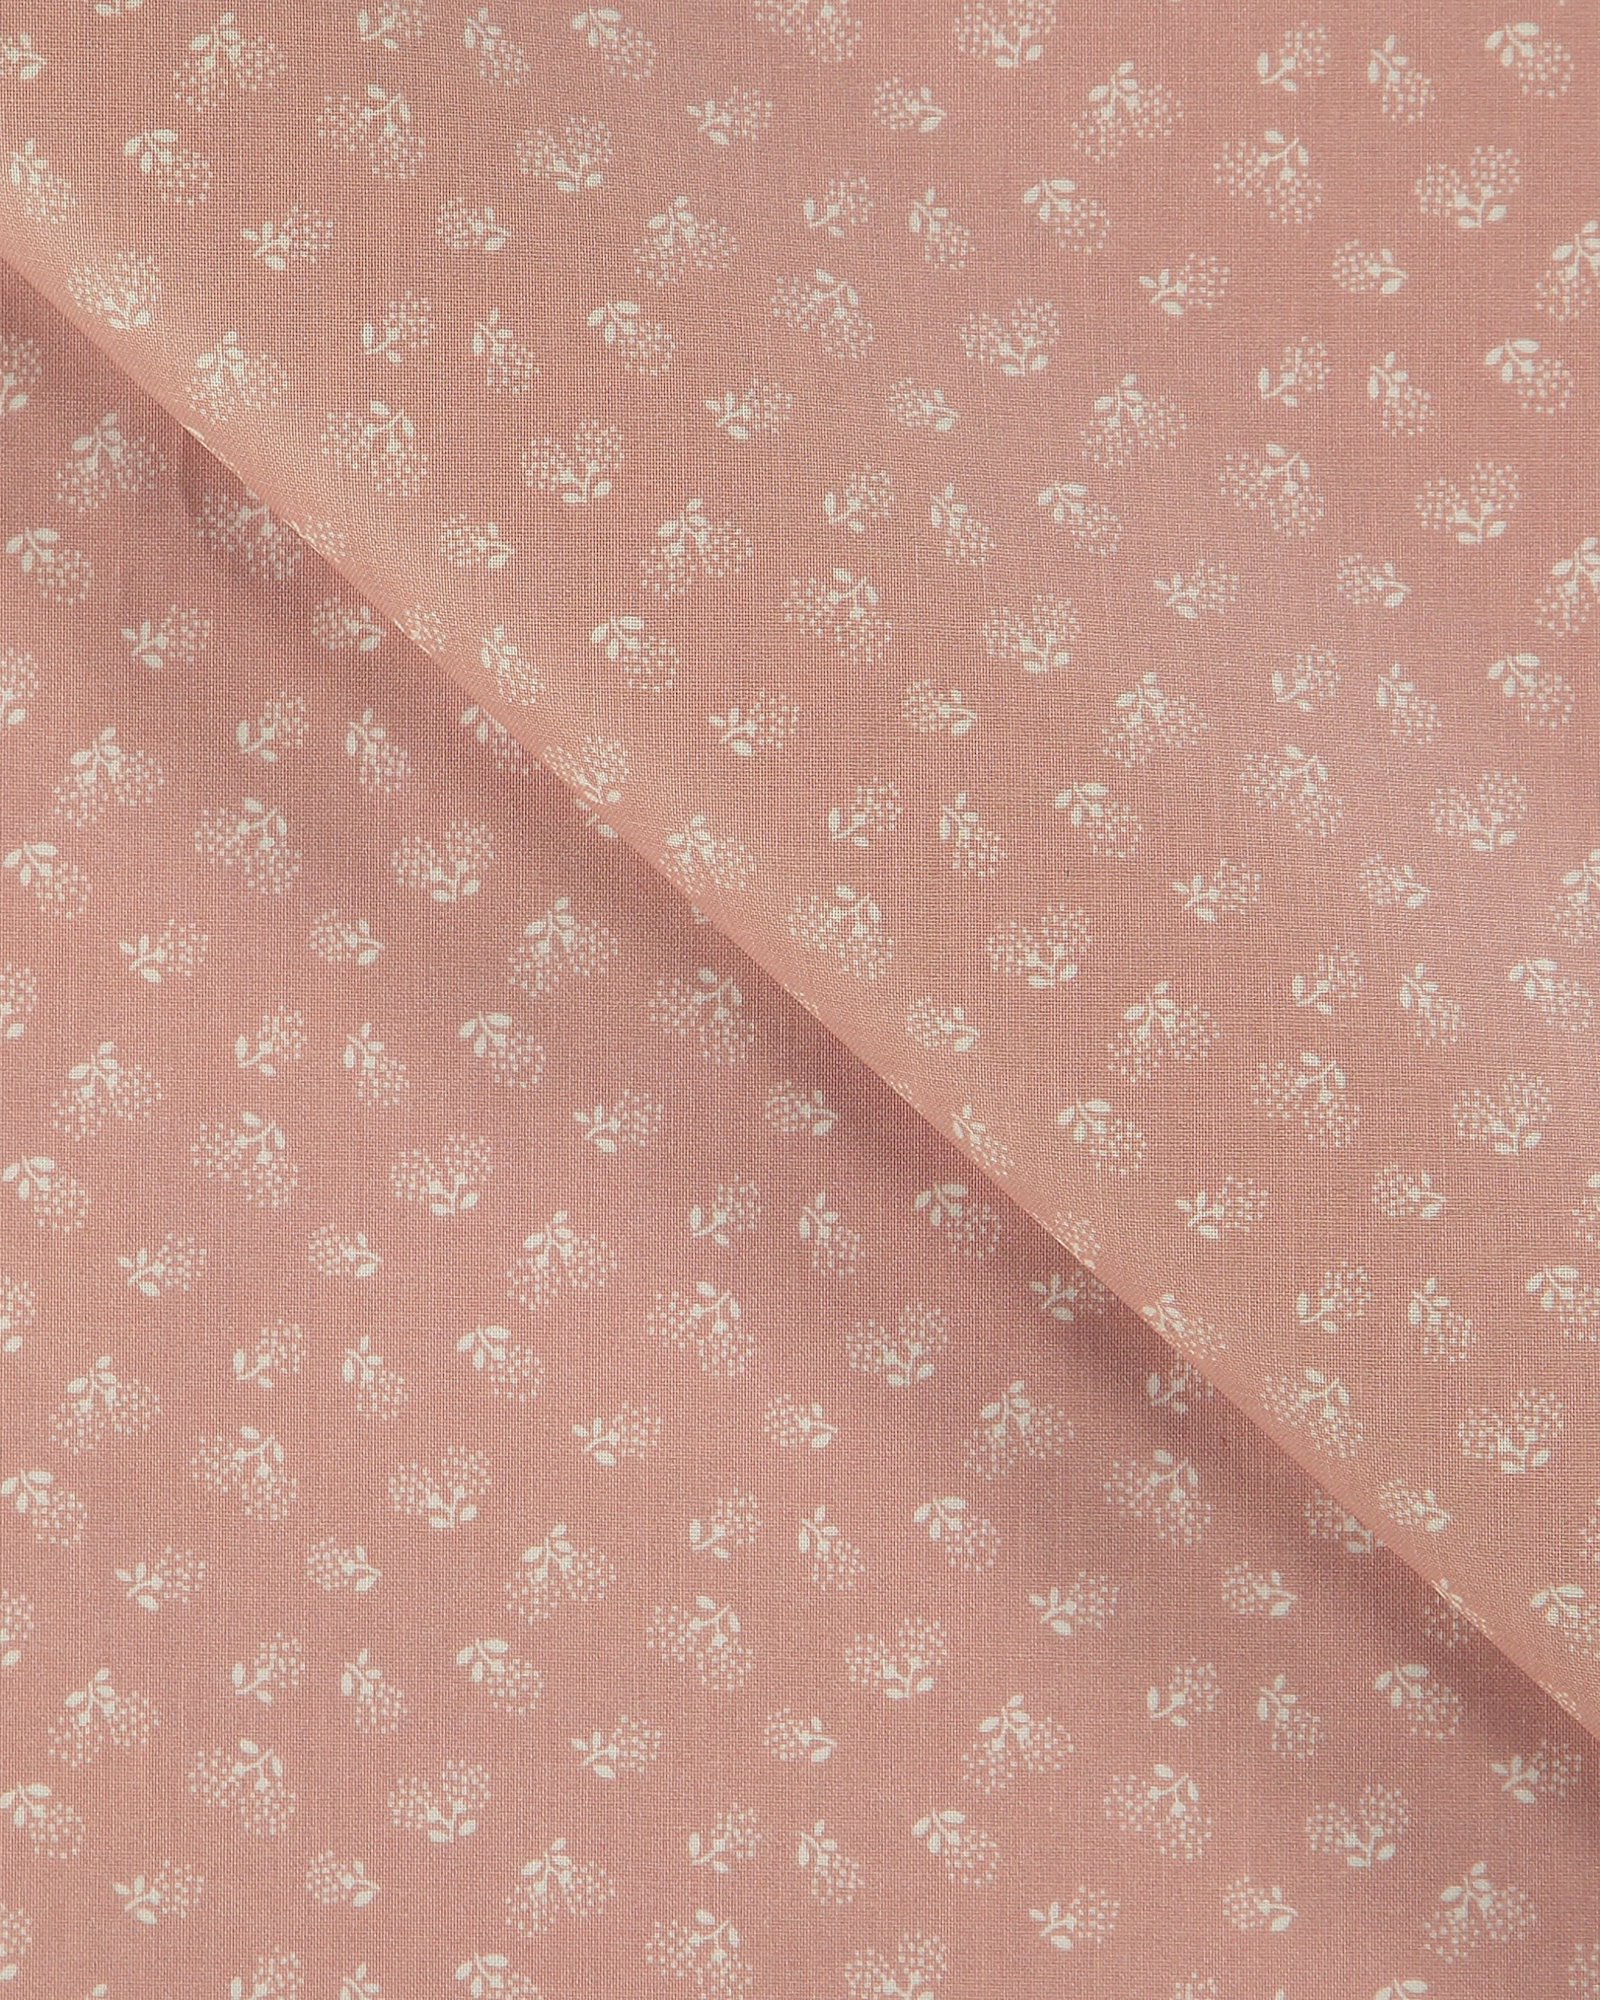 Tekstilvoksduk støvet rosa med blomster 866138_pack